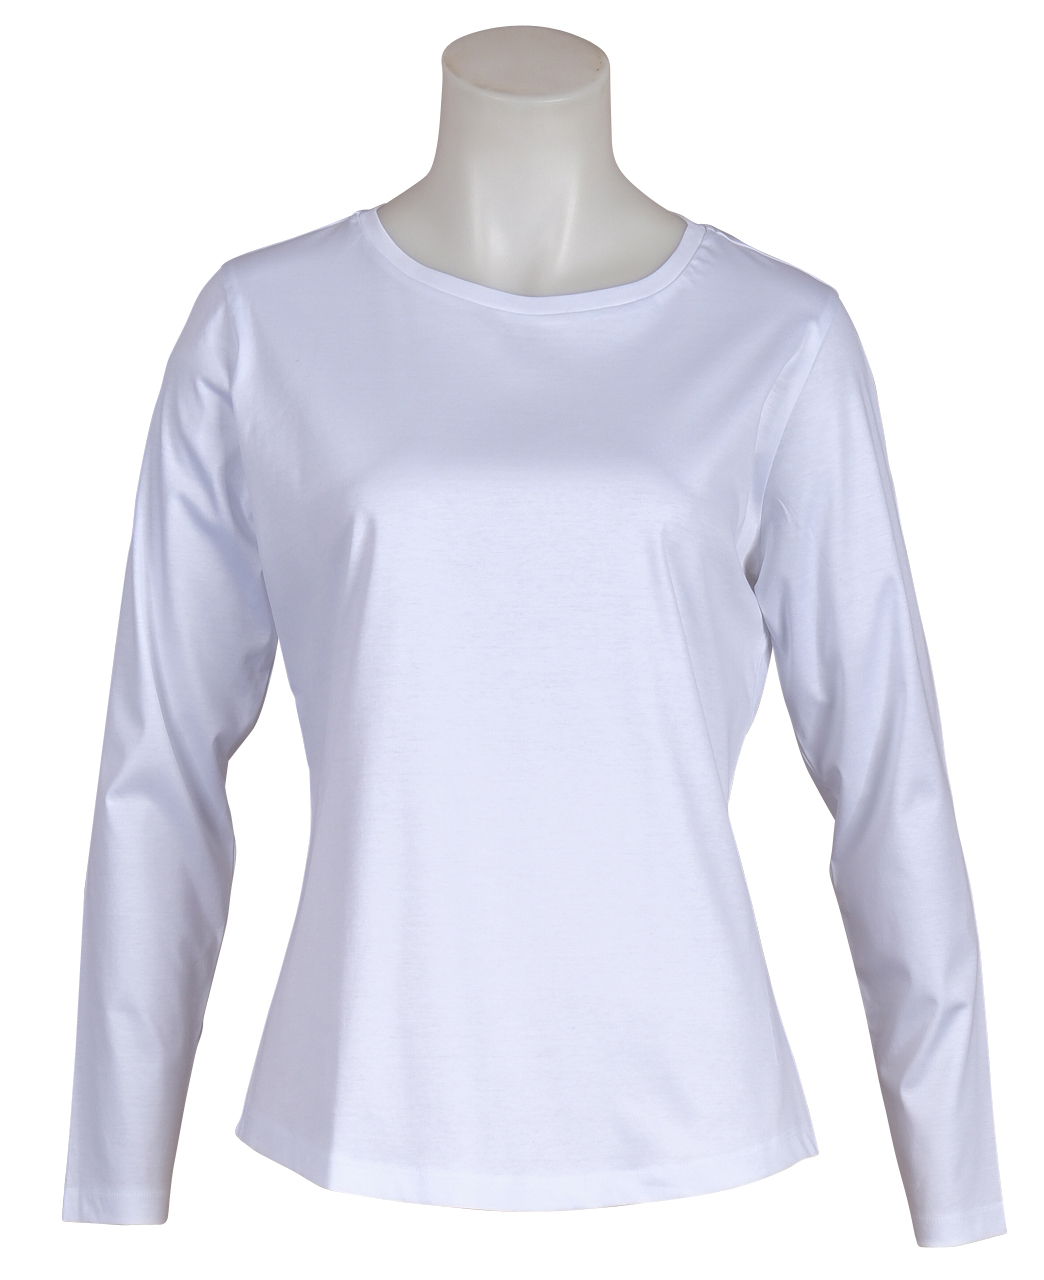 Soluzione - JerseyShirt - Langarm - Weiß